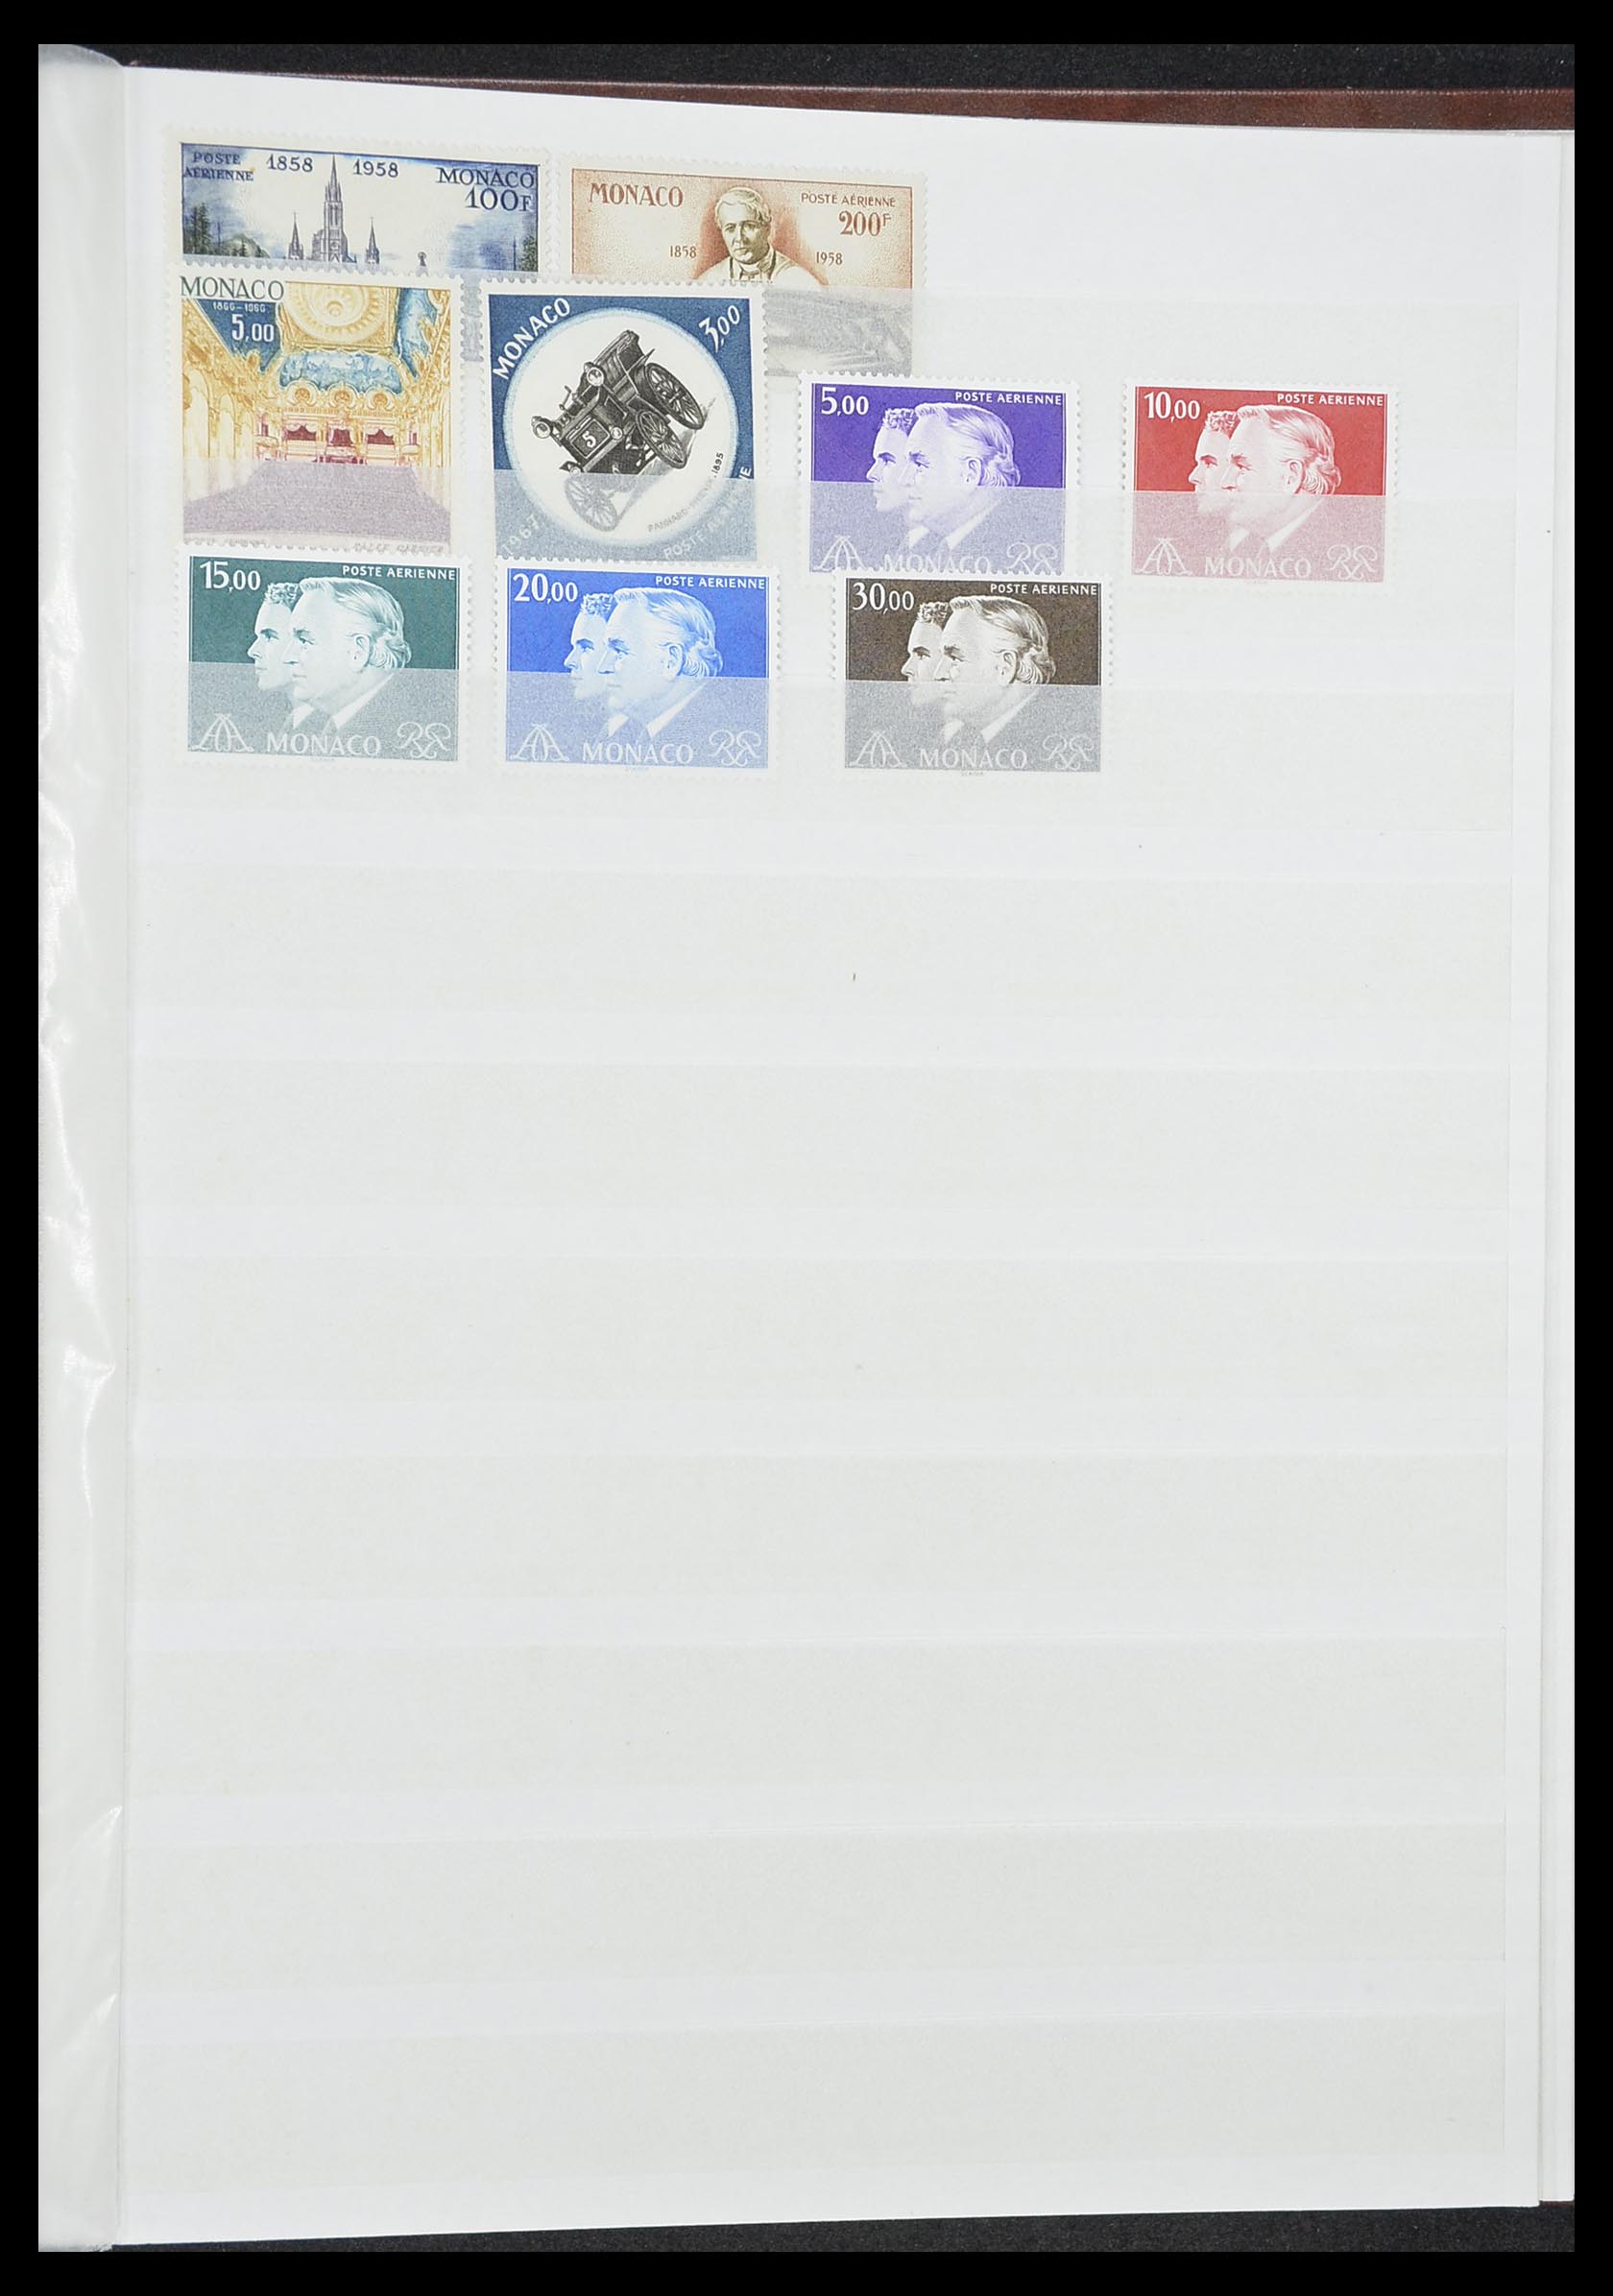 33833 049 - Stamp collection 33833 Monaco souvenir sheets 1979-2015.